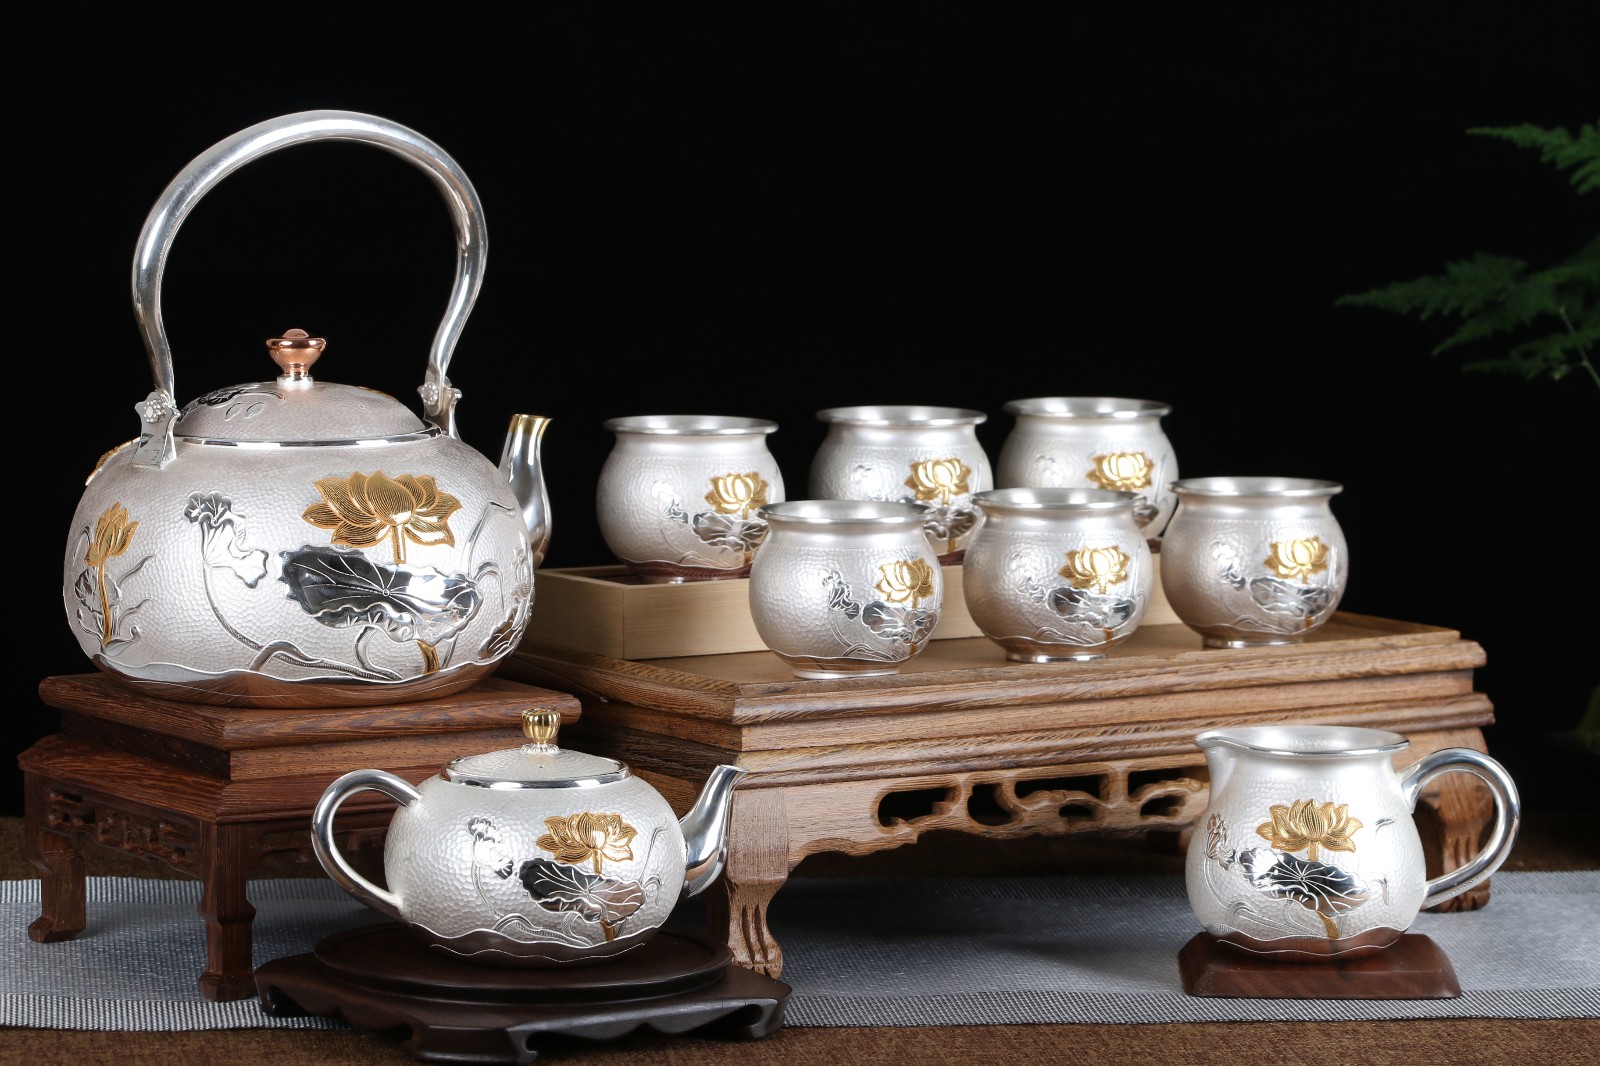 尚壶坊茶器官网_提供经典银壶、紫砂壶茶具，传承非物质文化遗产_产品系列